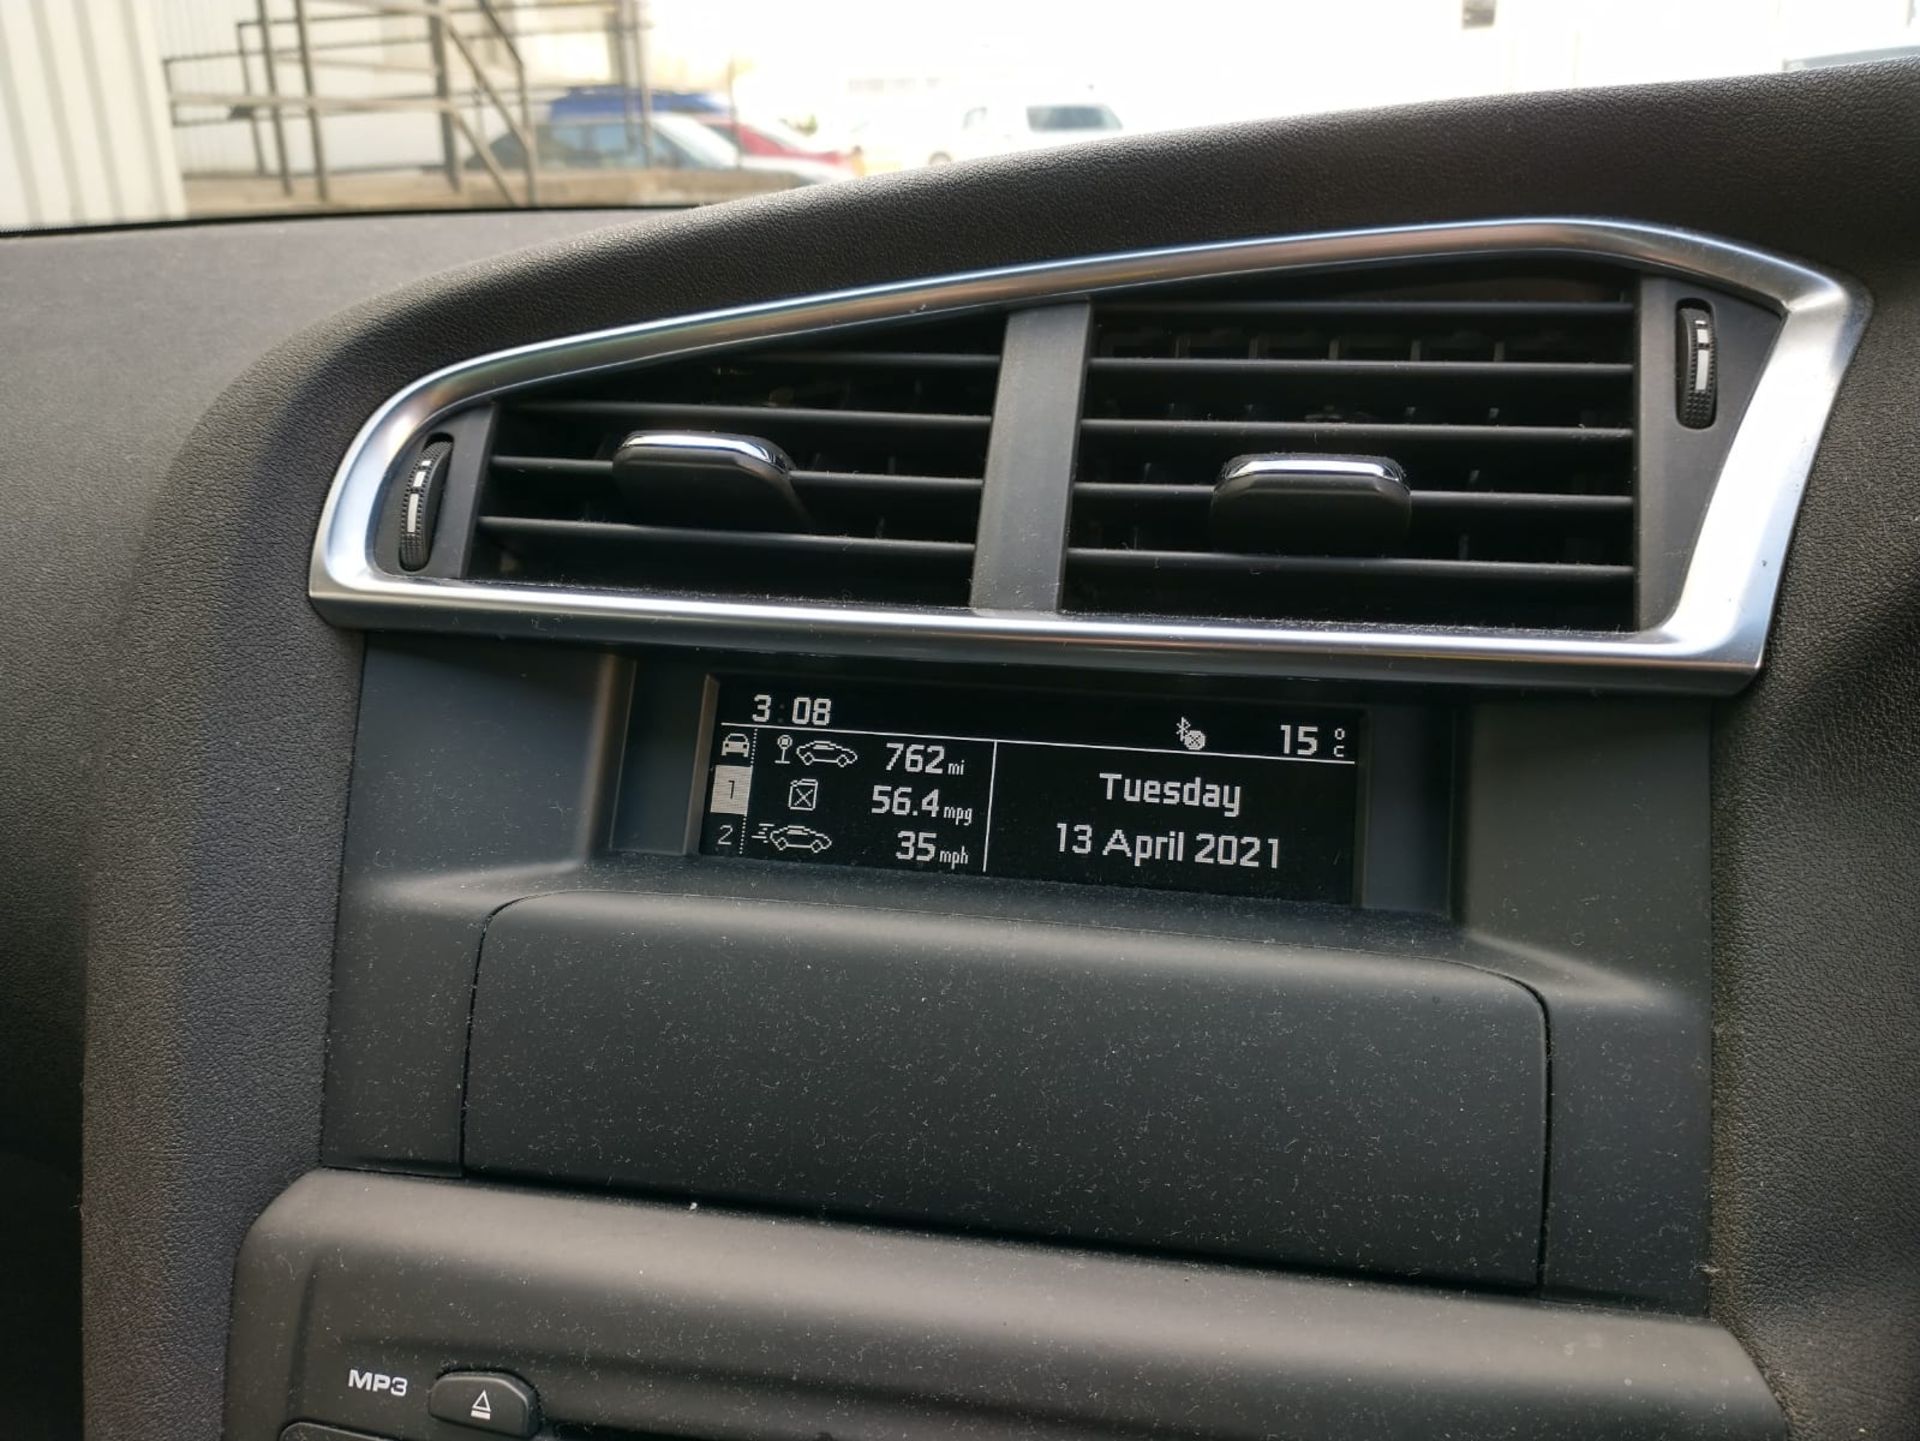 2013 Citroen C4 Selection Hdi 1.6 5Dr Hatchback - Image 4 of 15